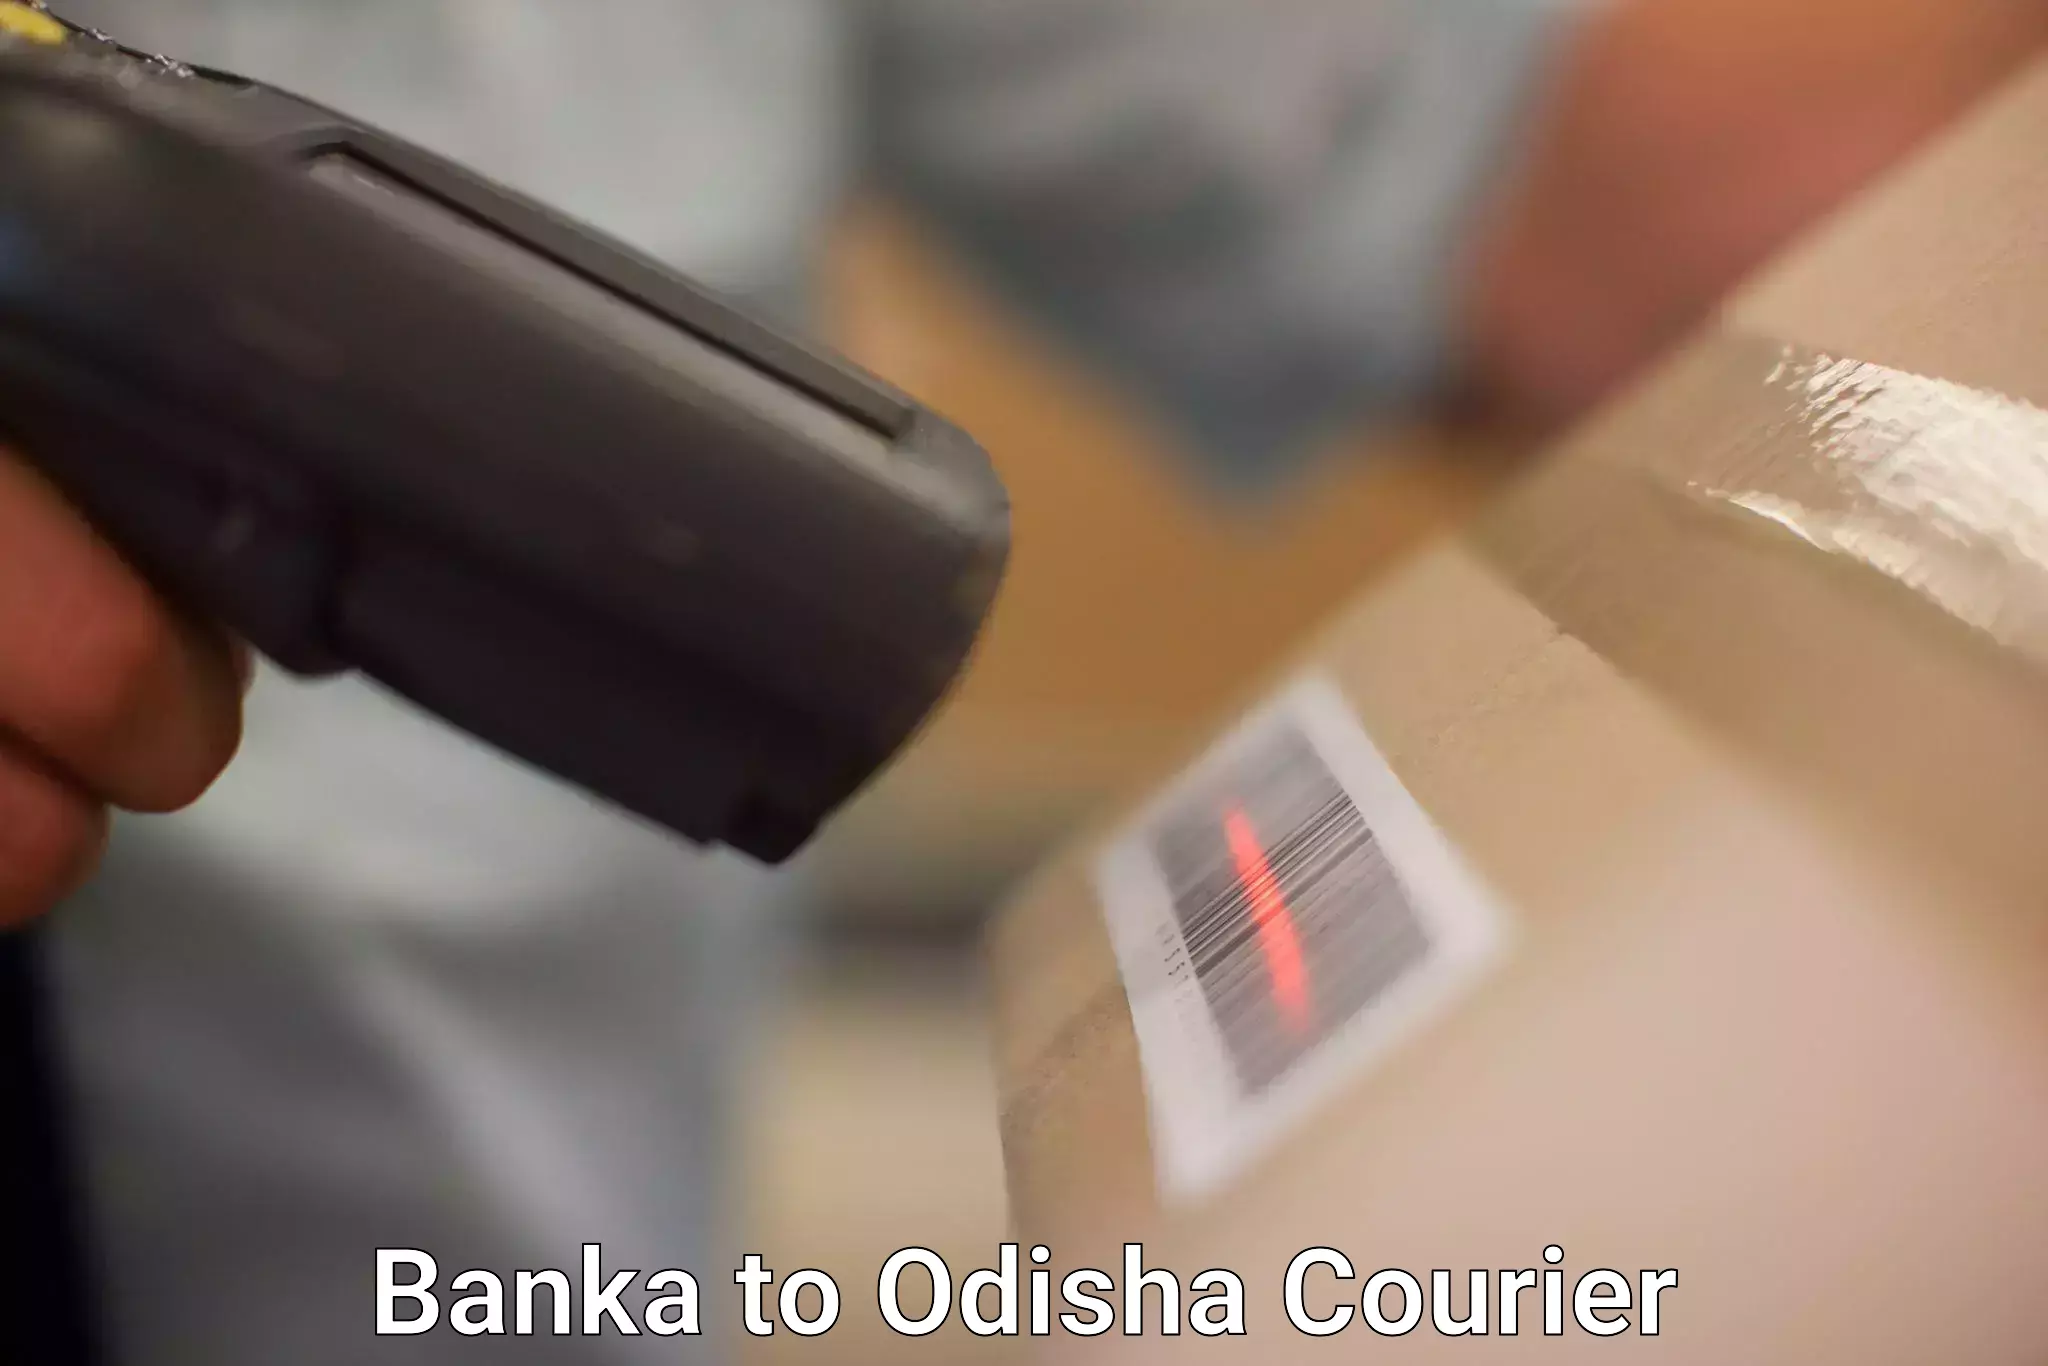 Tech-enabled shipping Banka to Sambalpur